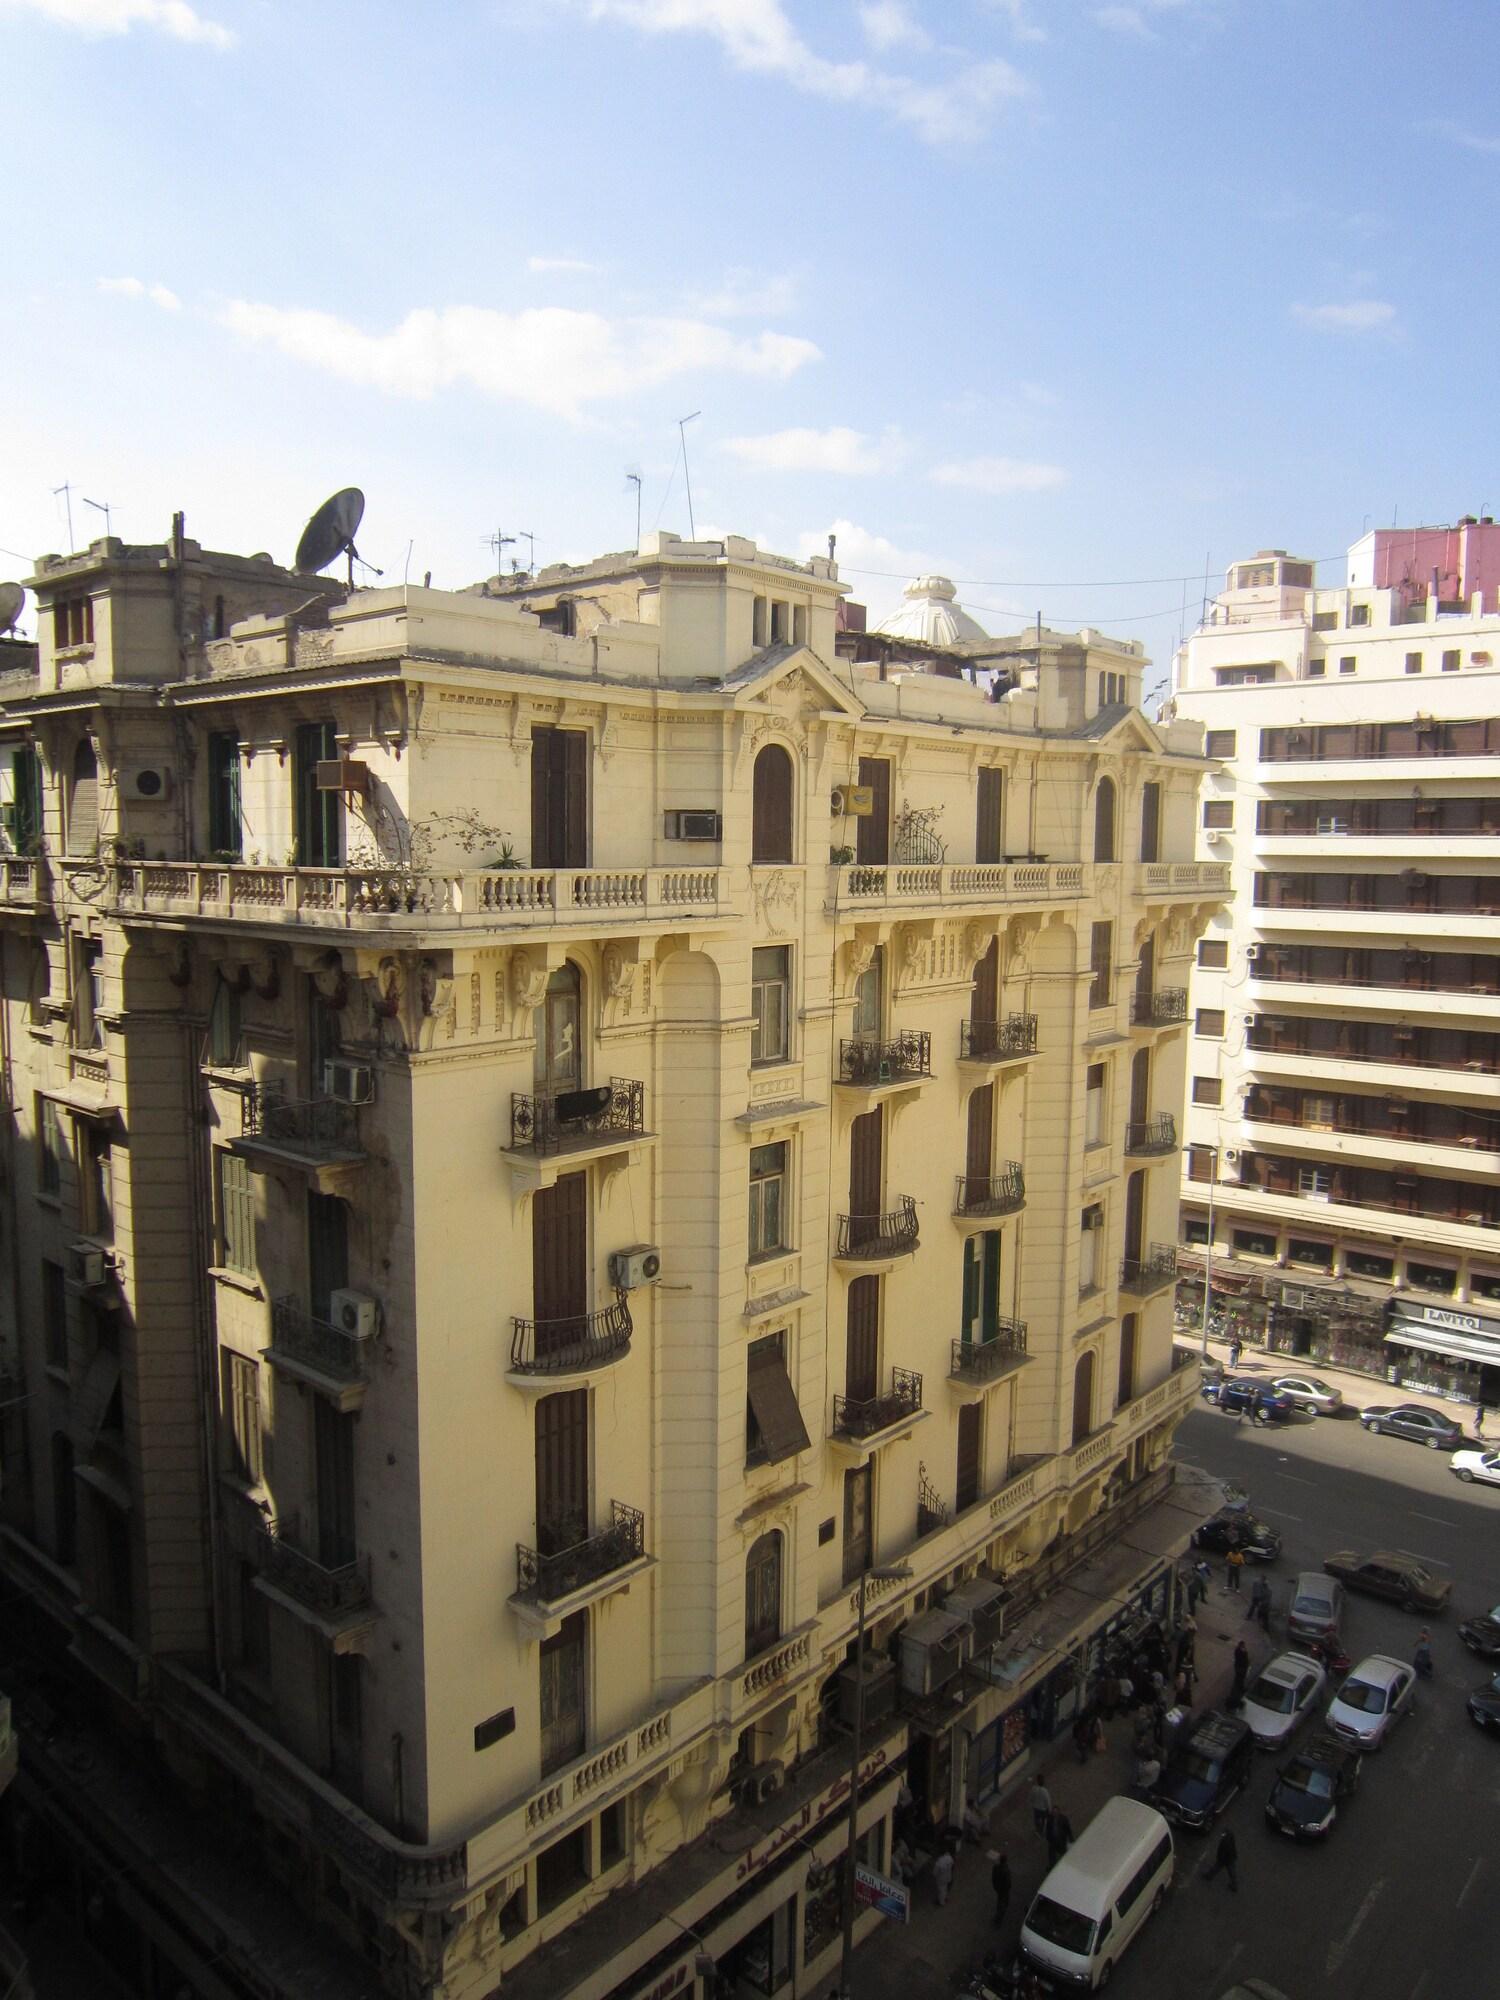 Cairo Paradise Hotel